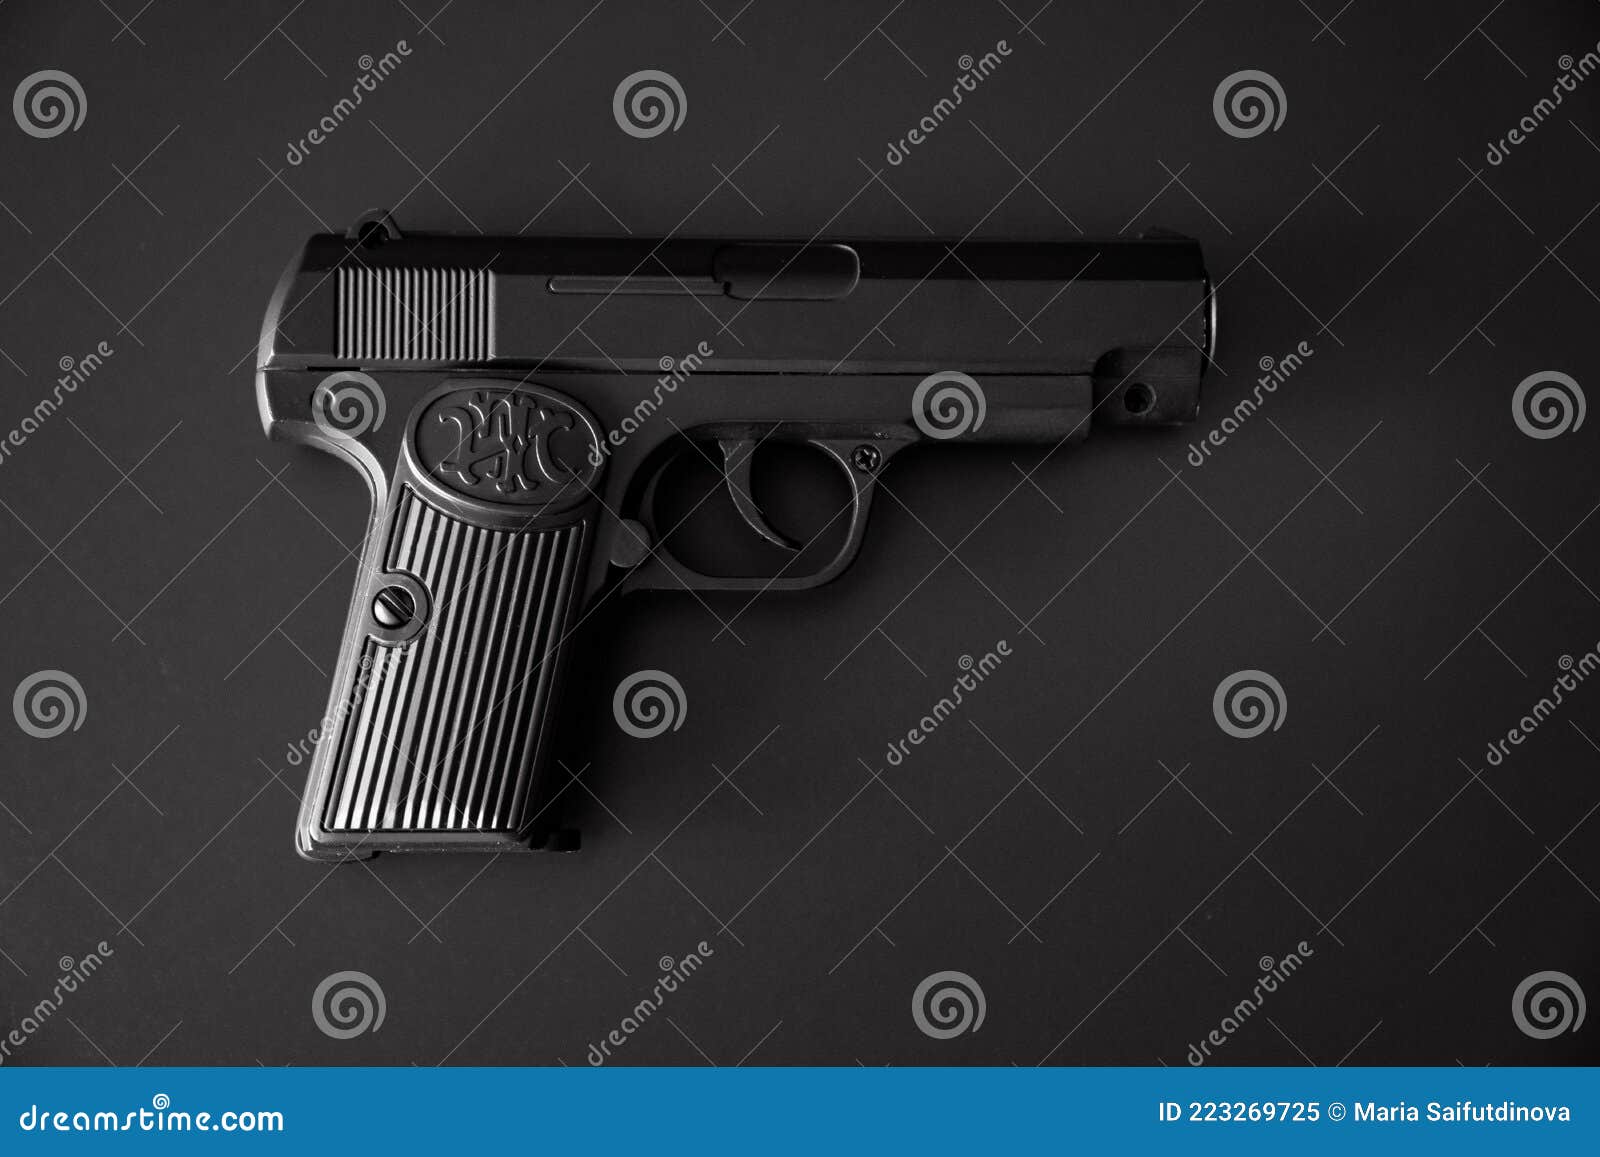 Parte da arma preta de brinquedo em um fundo branco. brinquedos perigosos.  arma. jogos e passatempos masculinos. proibição de porte de armas.